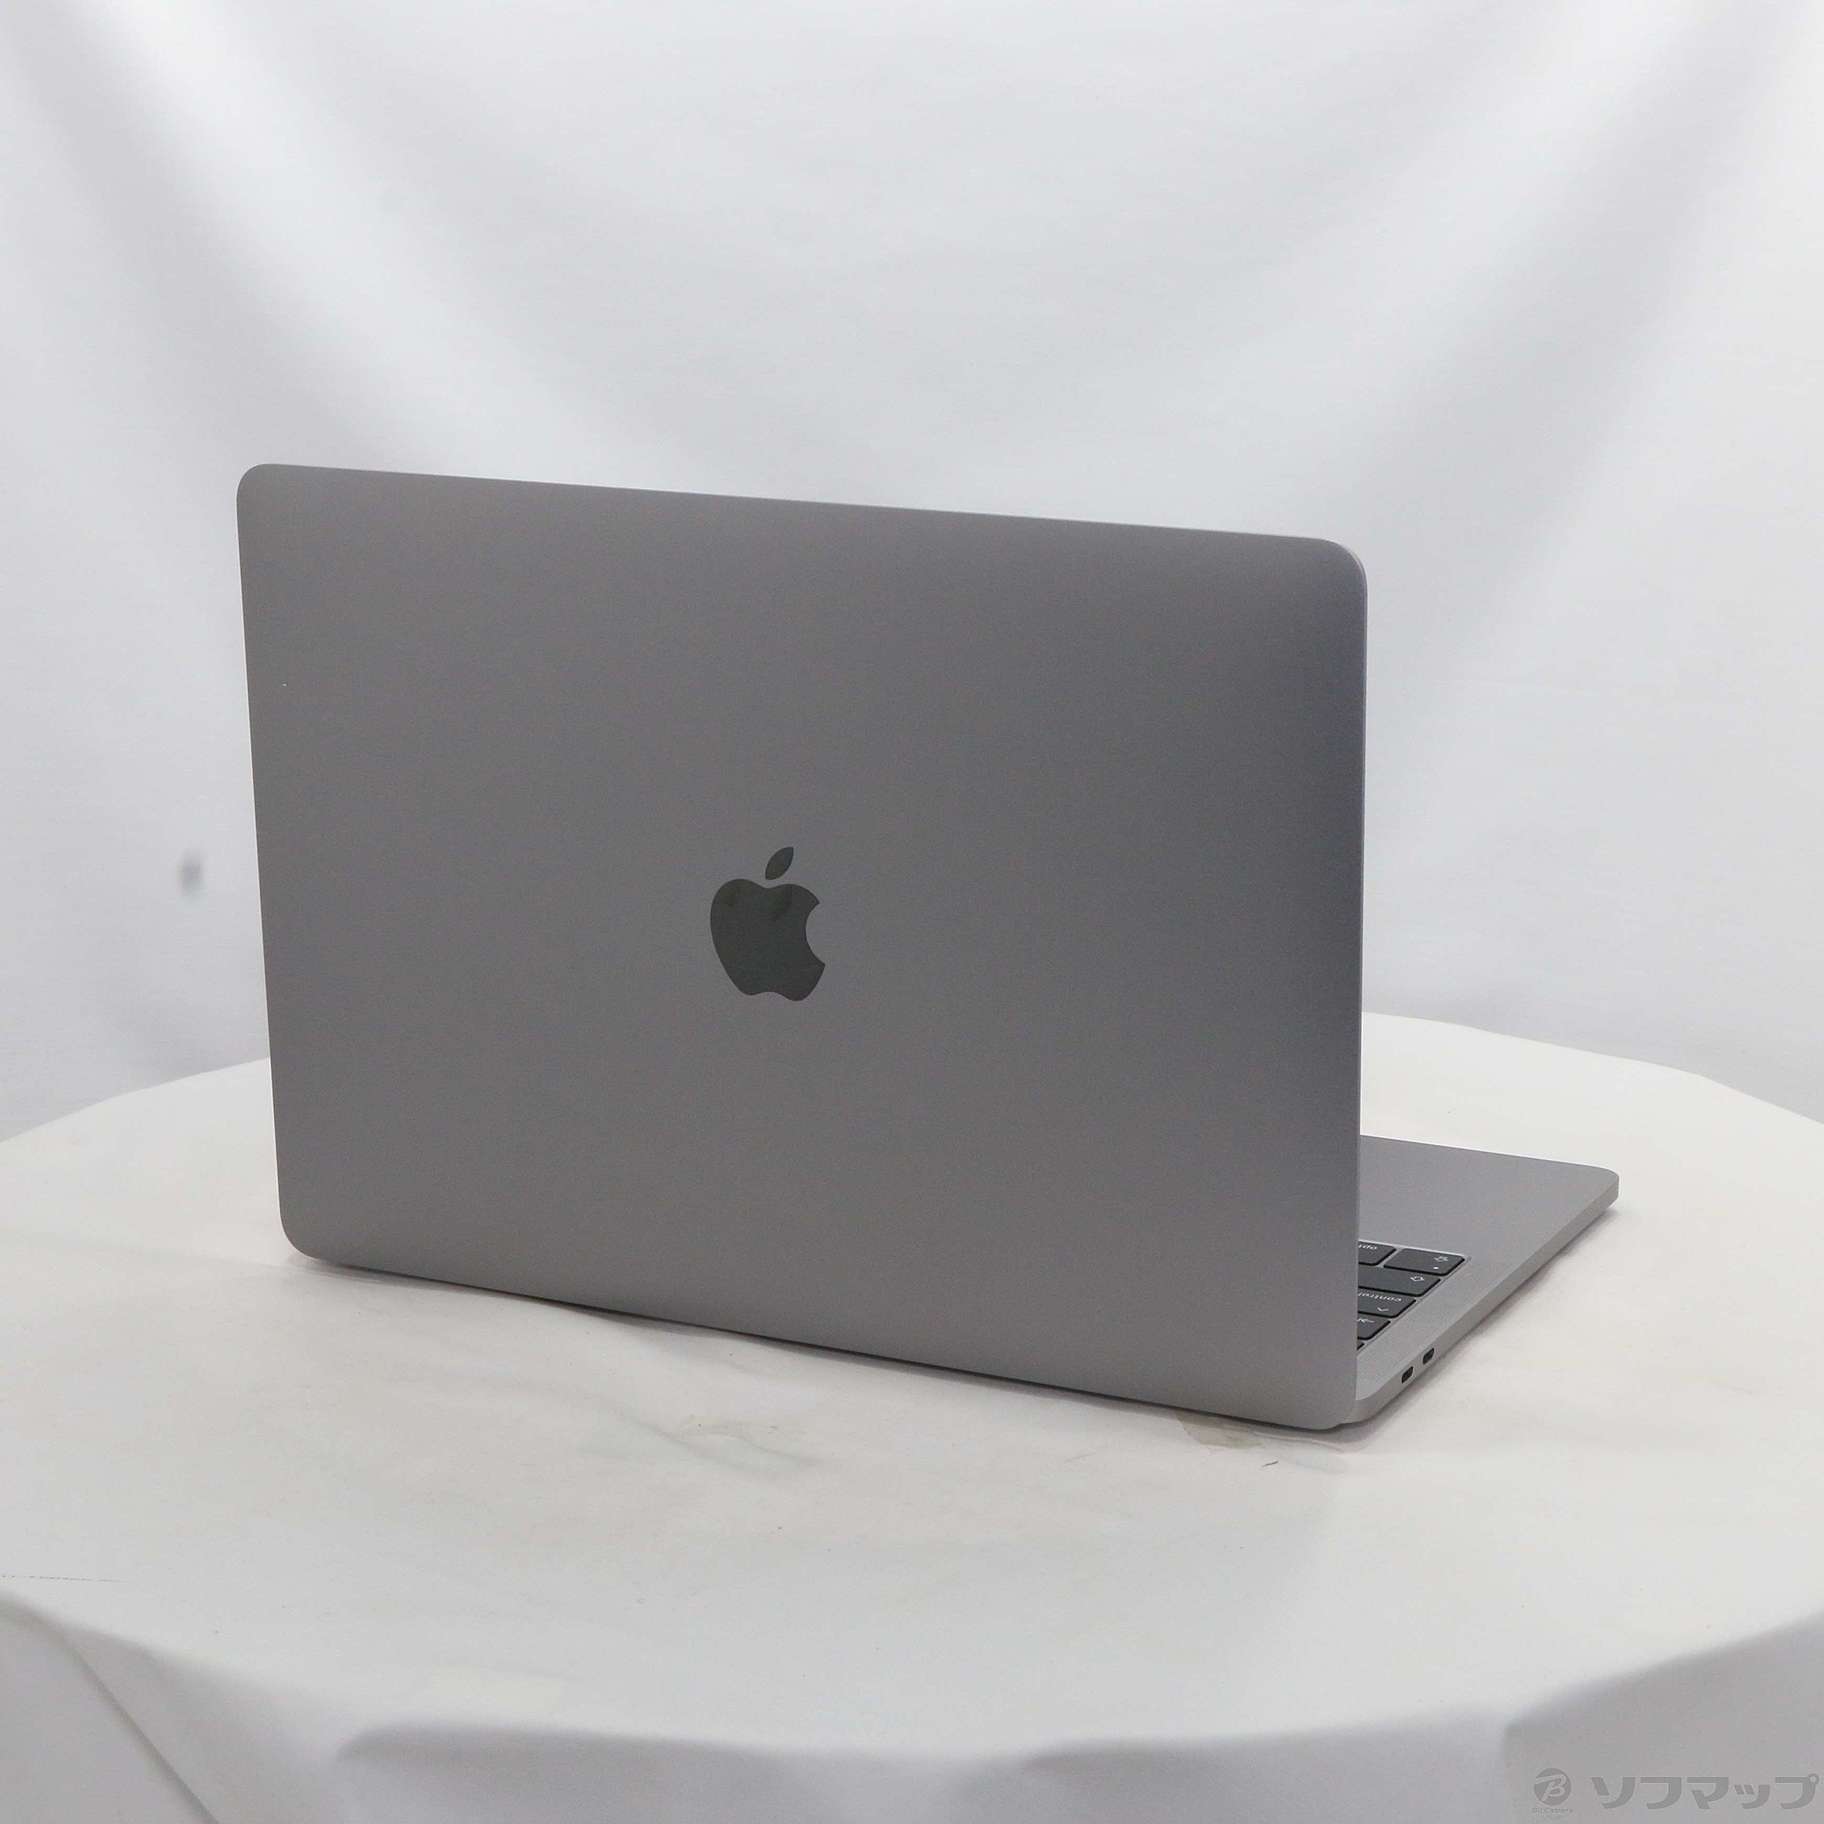 【新品未開封】MacBookPro 128GB MUHN2J/A スペースグレイ